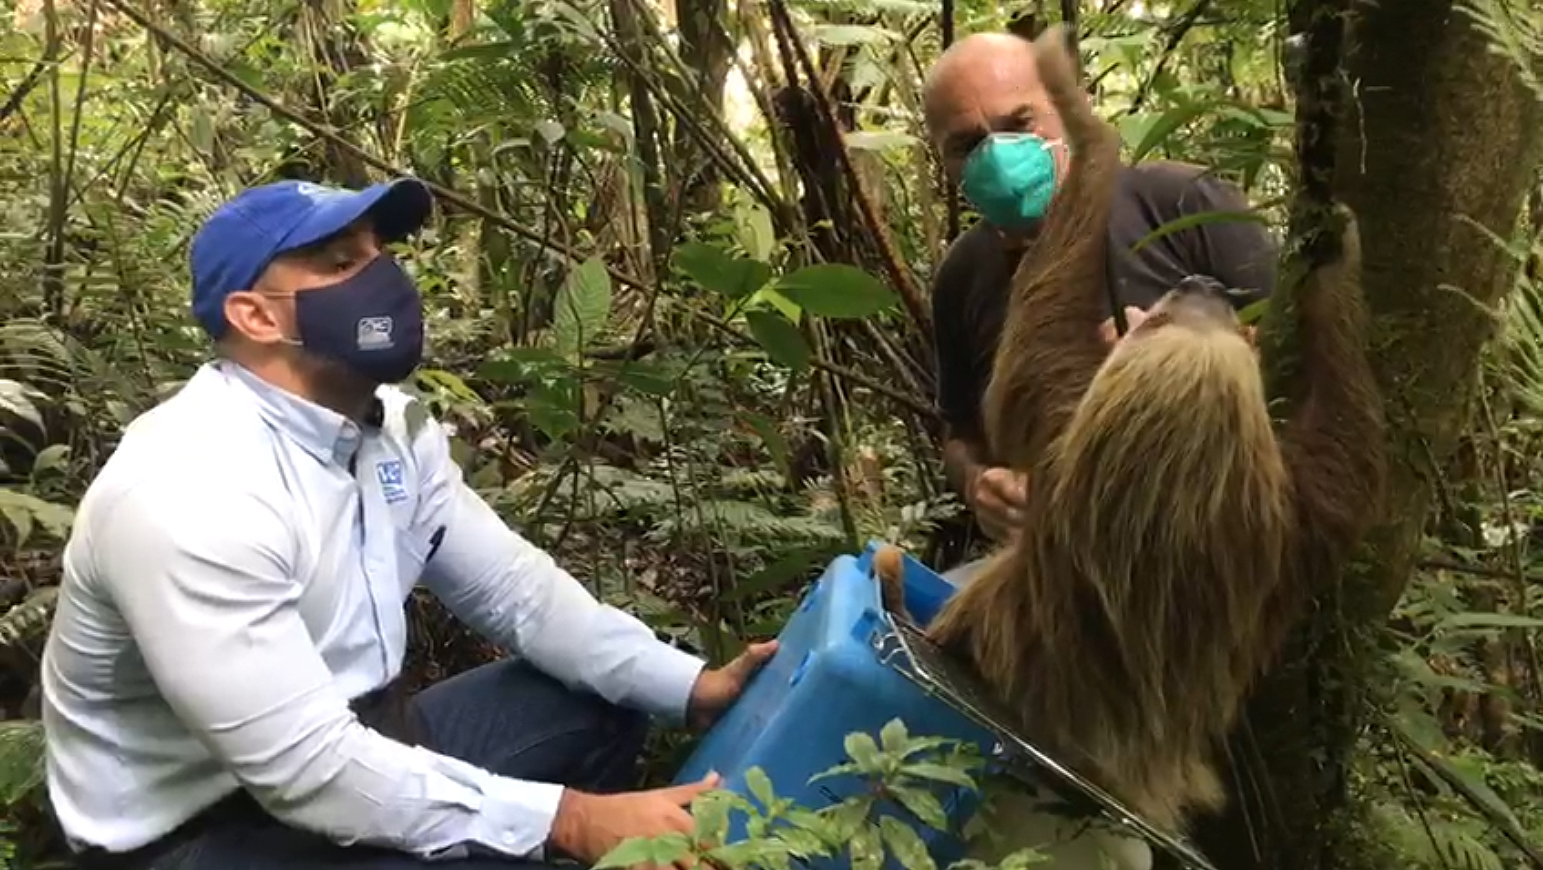 Un momento de la liberación, recogida en un vídeo. Imagen: Corporación Autónoma Regional del Valle del Cauca (CVC)